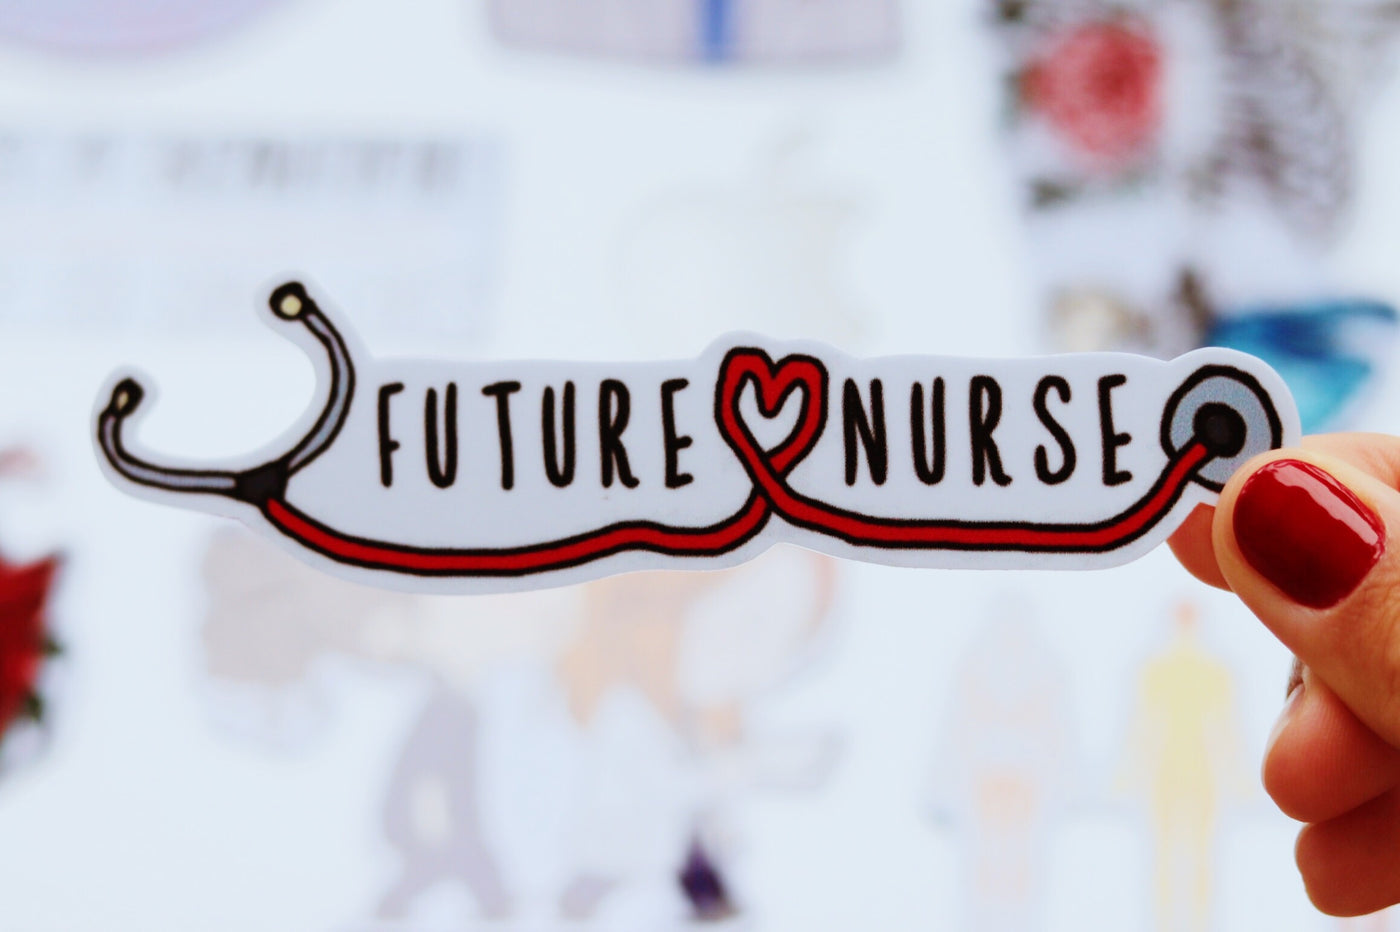 Future nurse